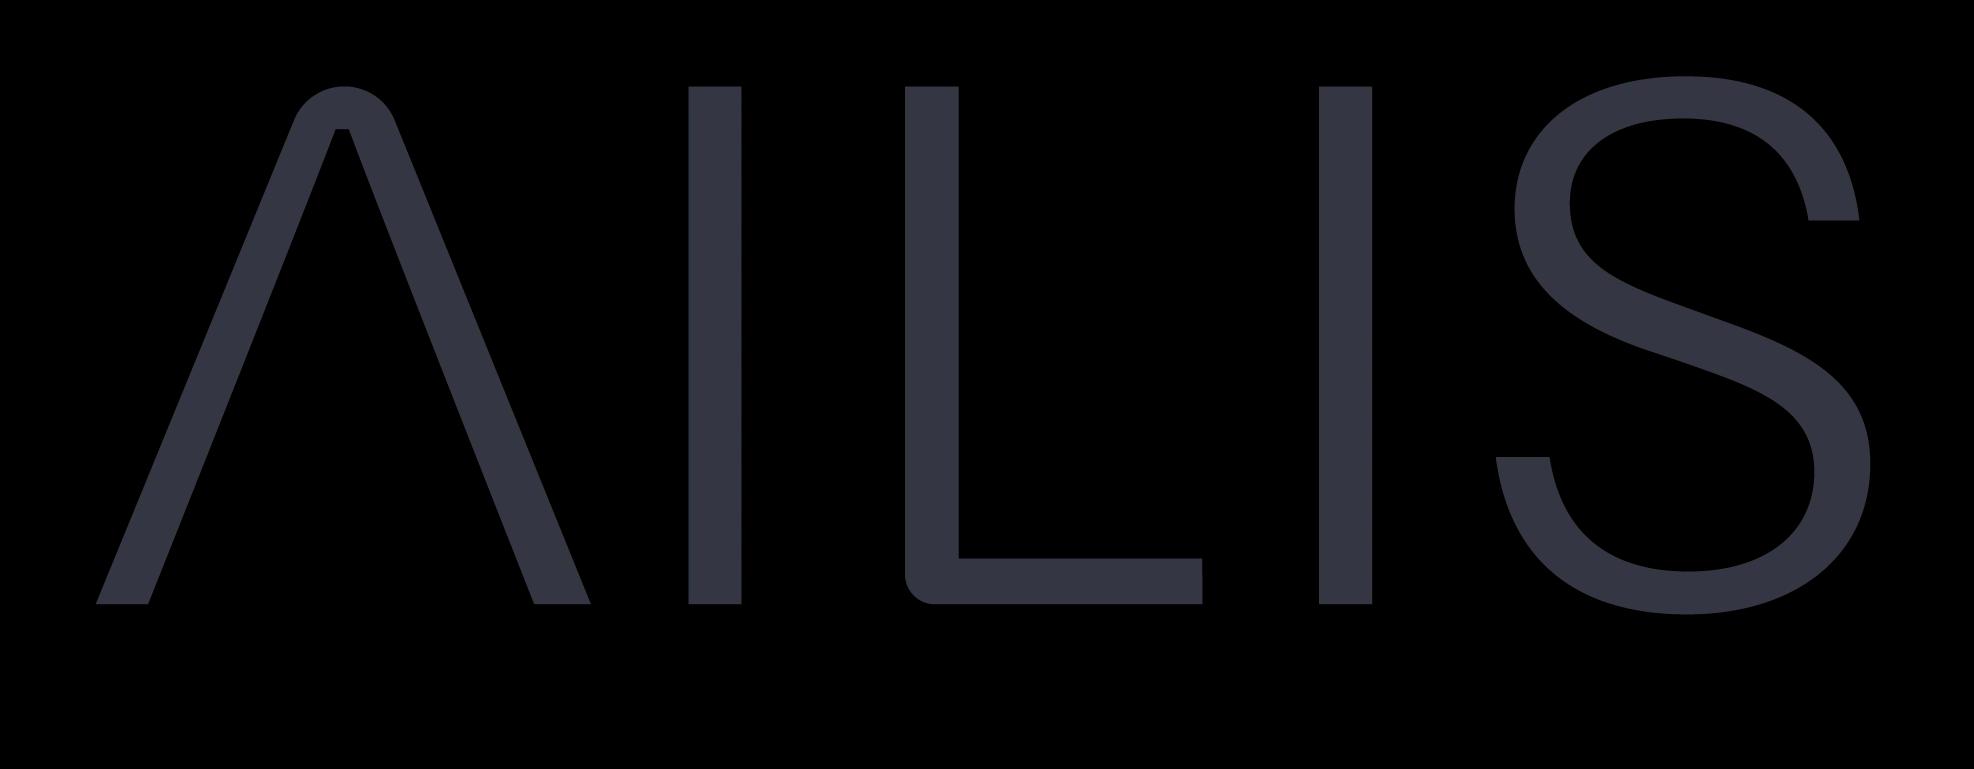 AILIS care_logo